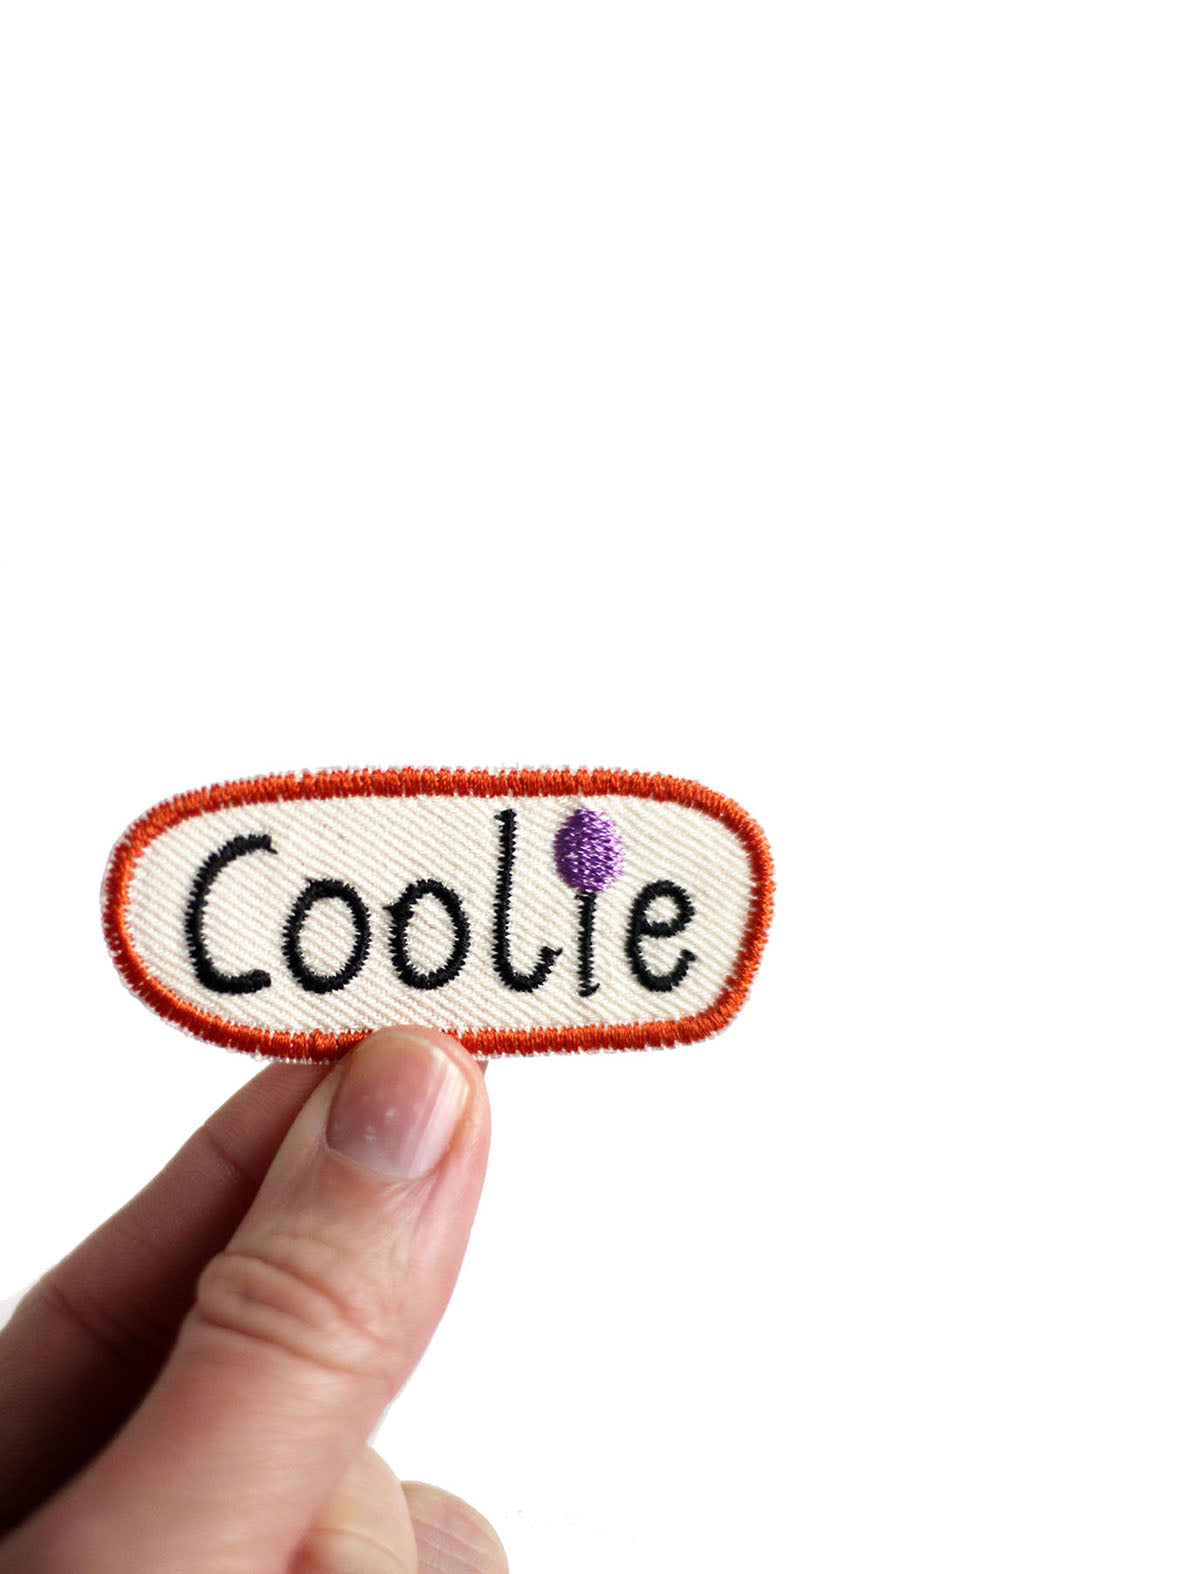 gestickter Patch mit dem Wort Coolie in lila und rostorange